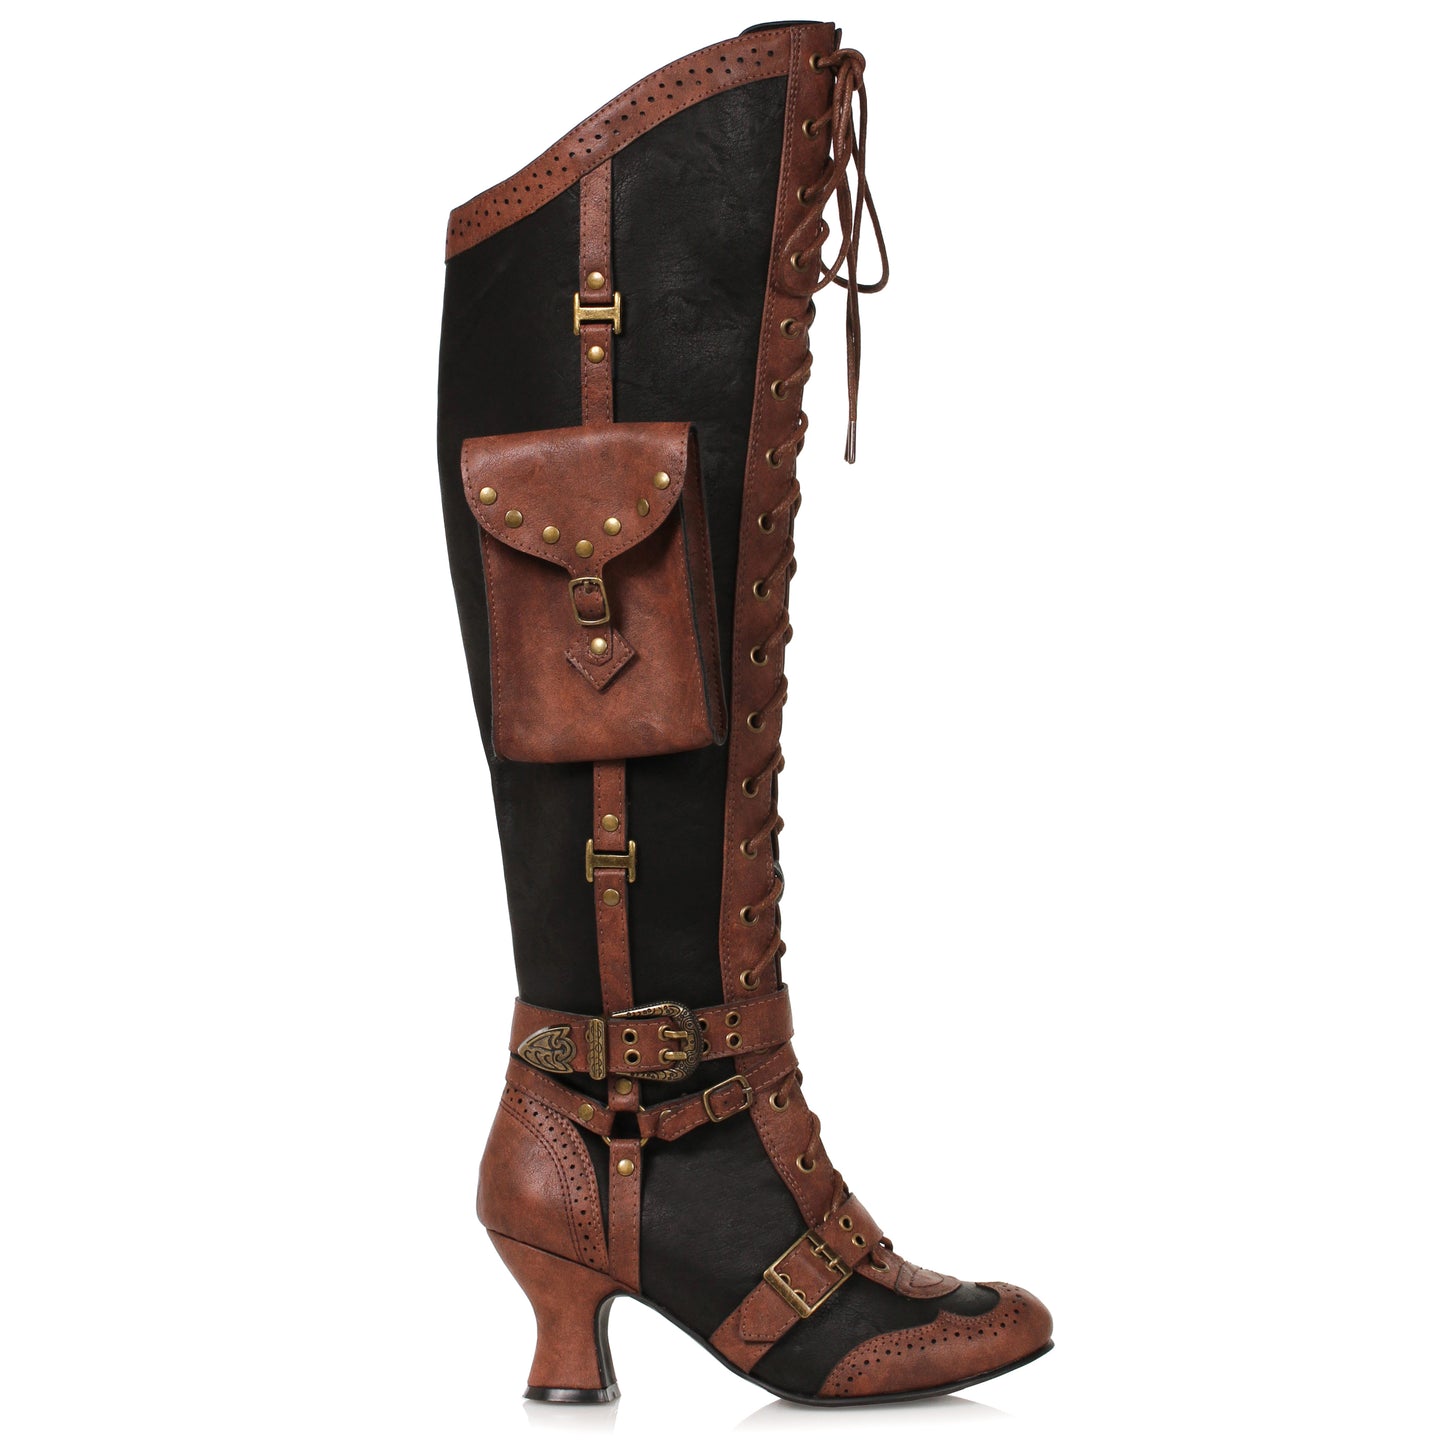 254-INGRID Ellie Shoes 2.5" Heel Steampunk Boot 2 INCH HEEL KNEE HIGH